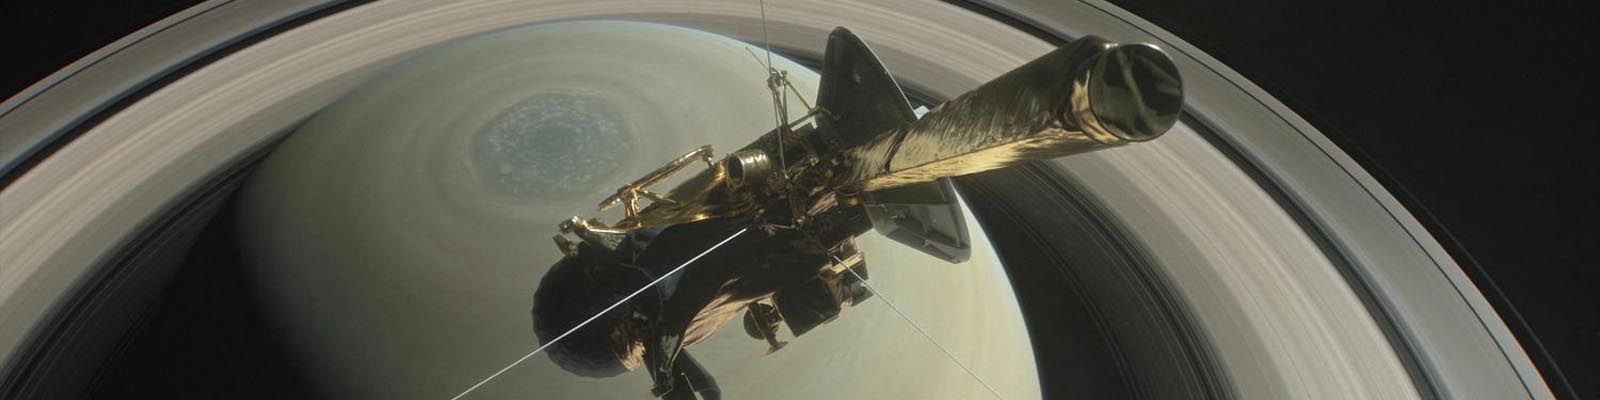 La sonde Cassini survole le pôle nord de Saturne